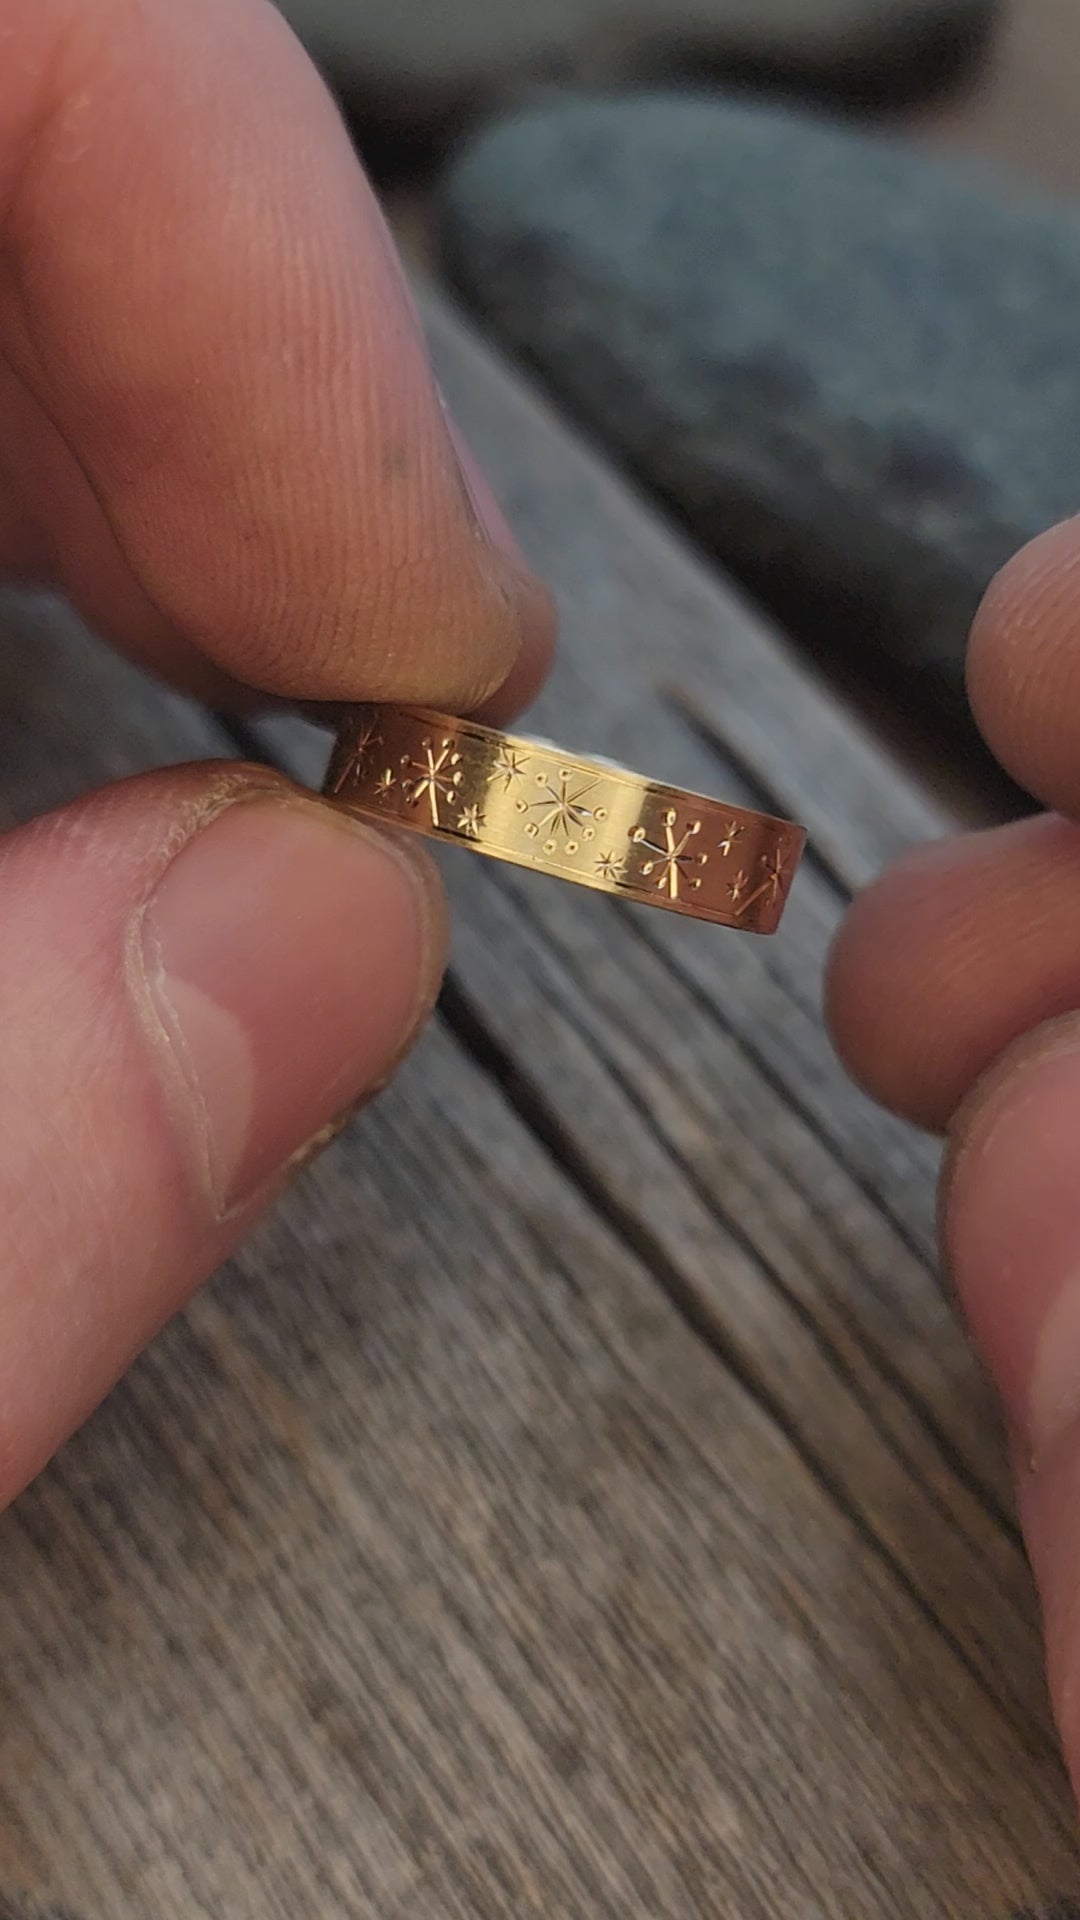 VERSANDFERTIG 5 x 1,2 mm Ring aus Gelbgold mit Löwenzahn und Sternen, Größe 8,25 – Band mit Gravur im hellen Schnitt